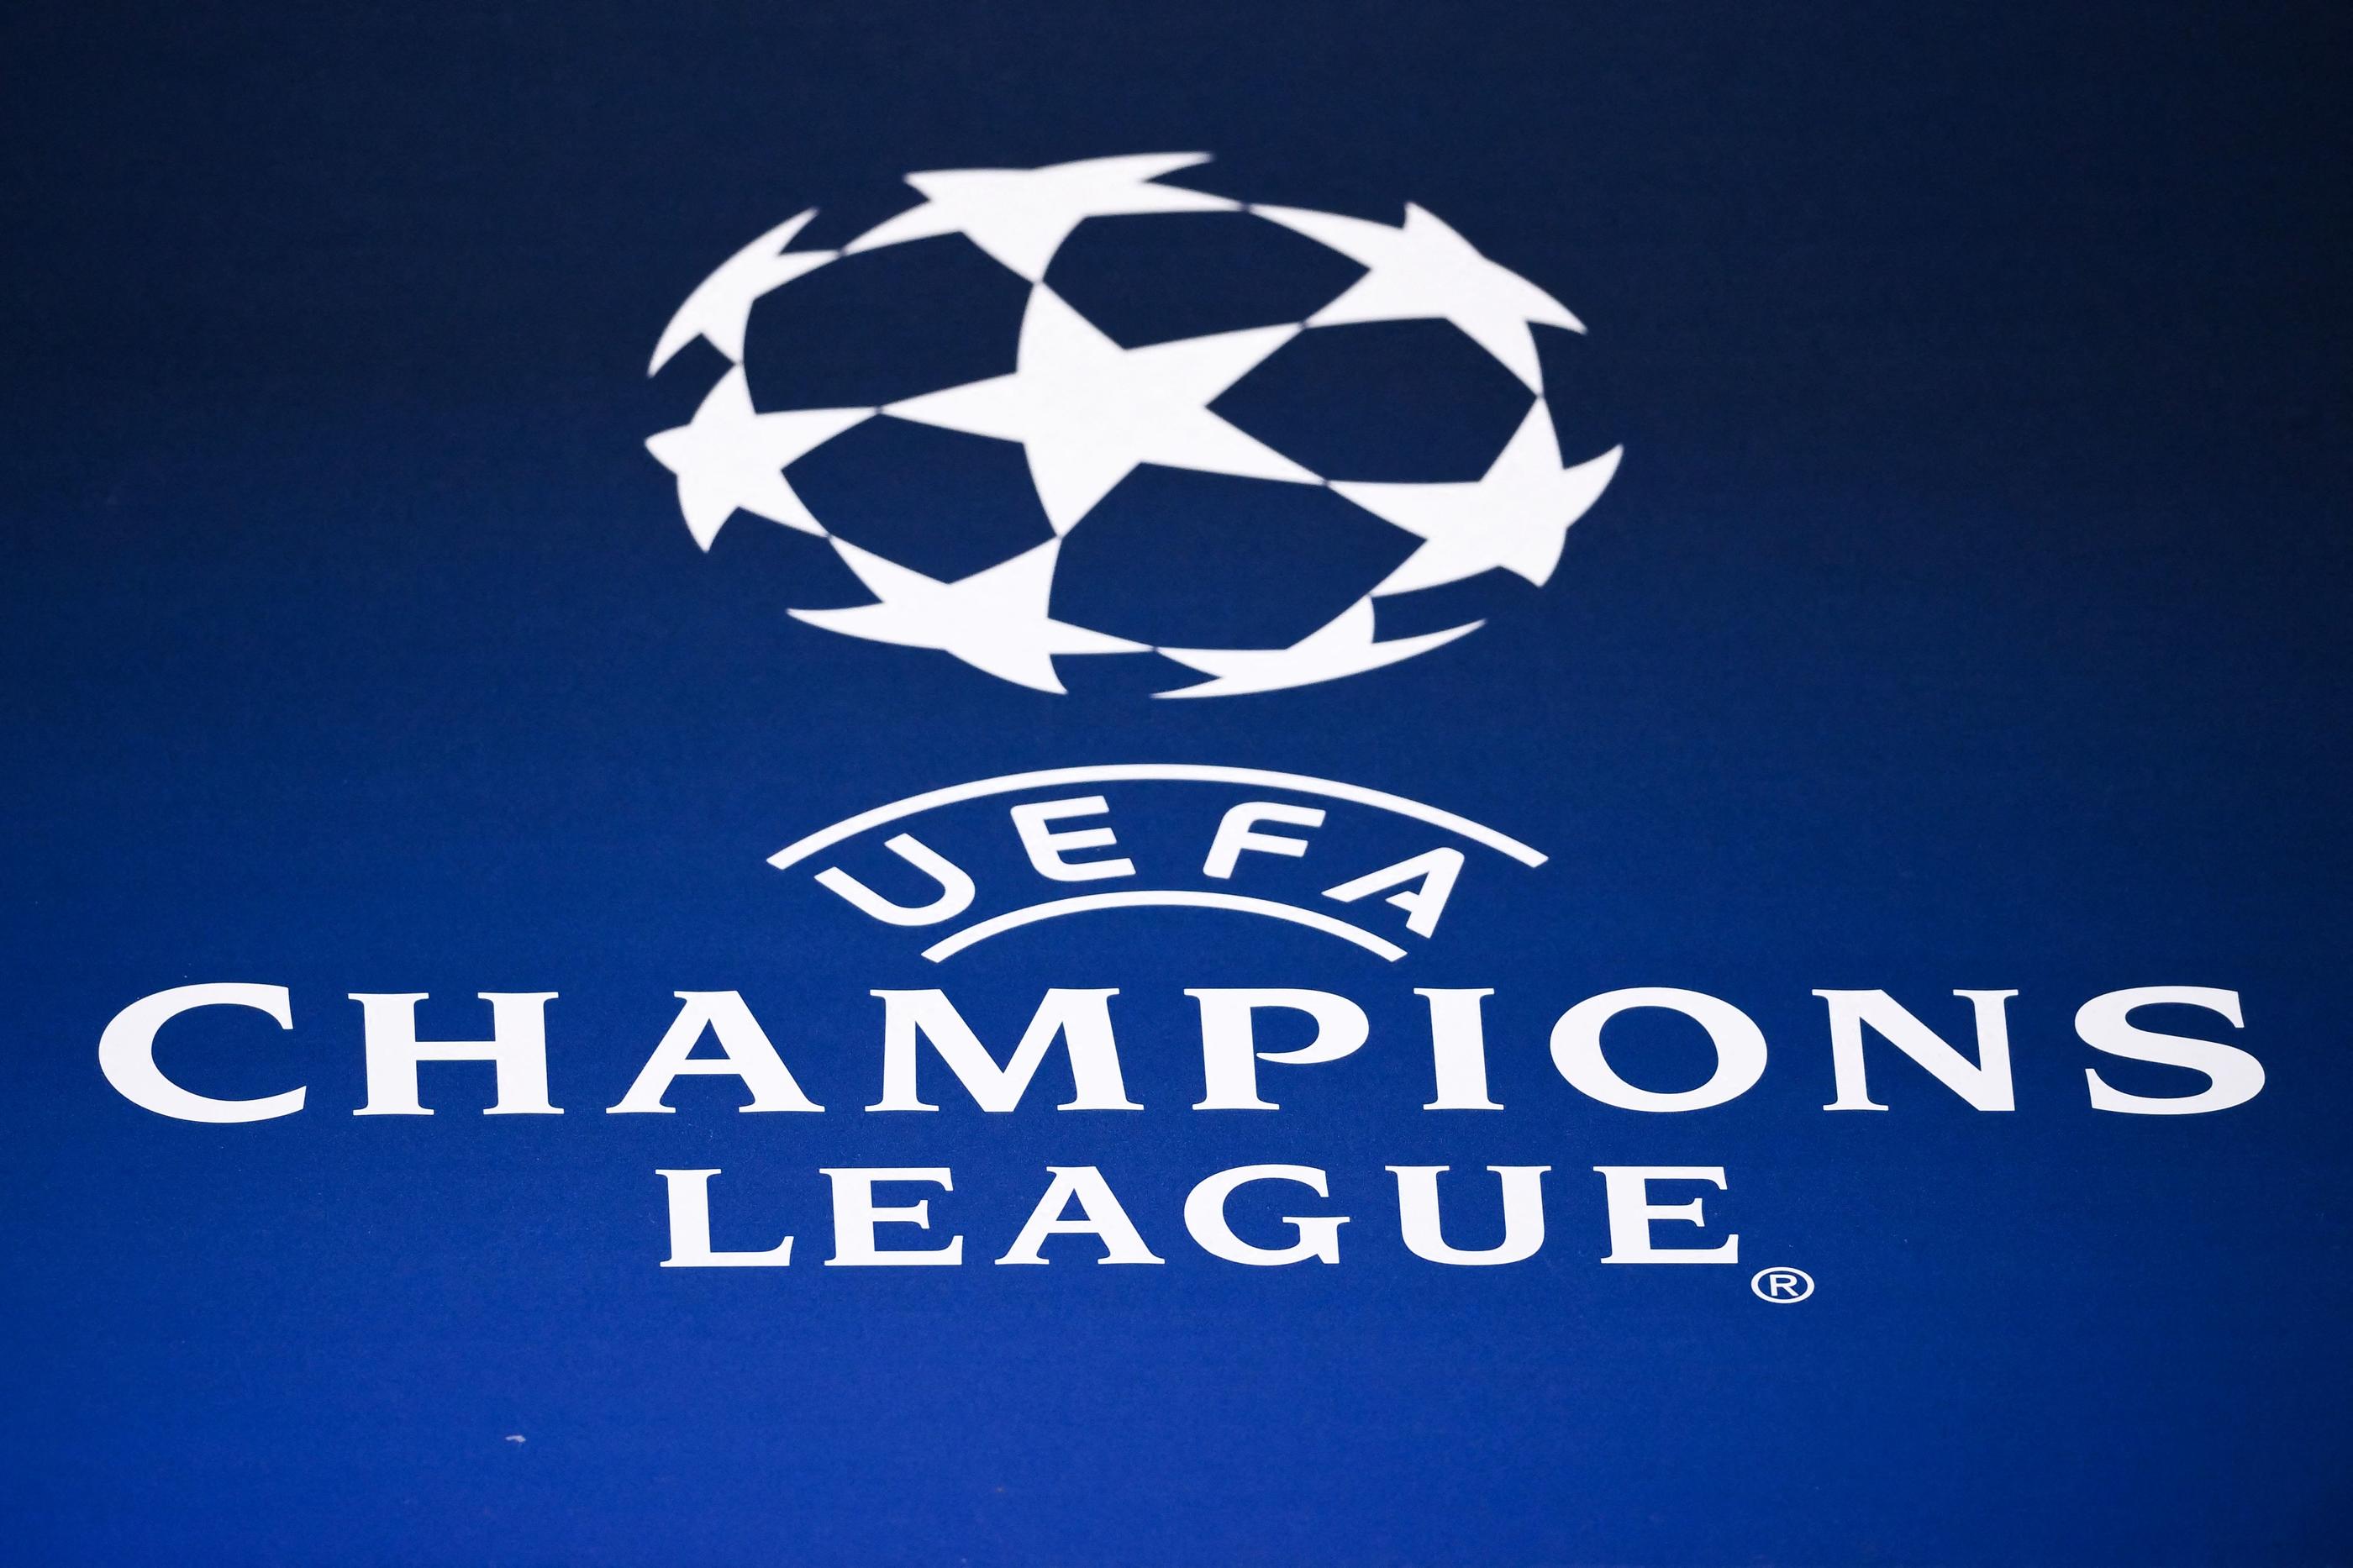 Uefa Champions League Tout Savoir Sur Le Tirage De La Phase De Groupes Uefa Champions League Uefa Com [ 556 x 988 Pixel ]